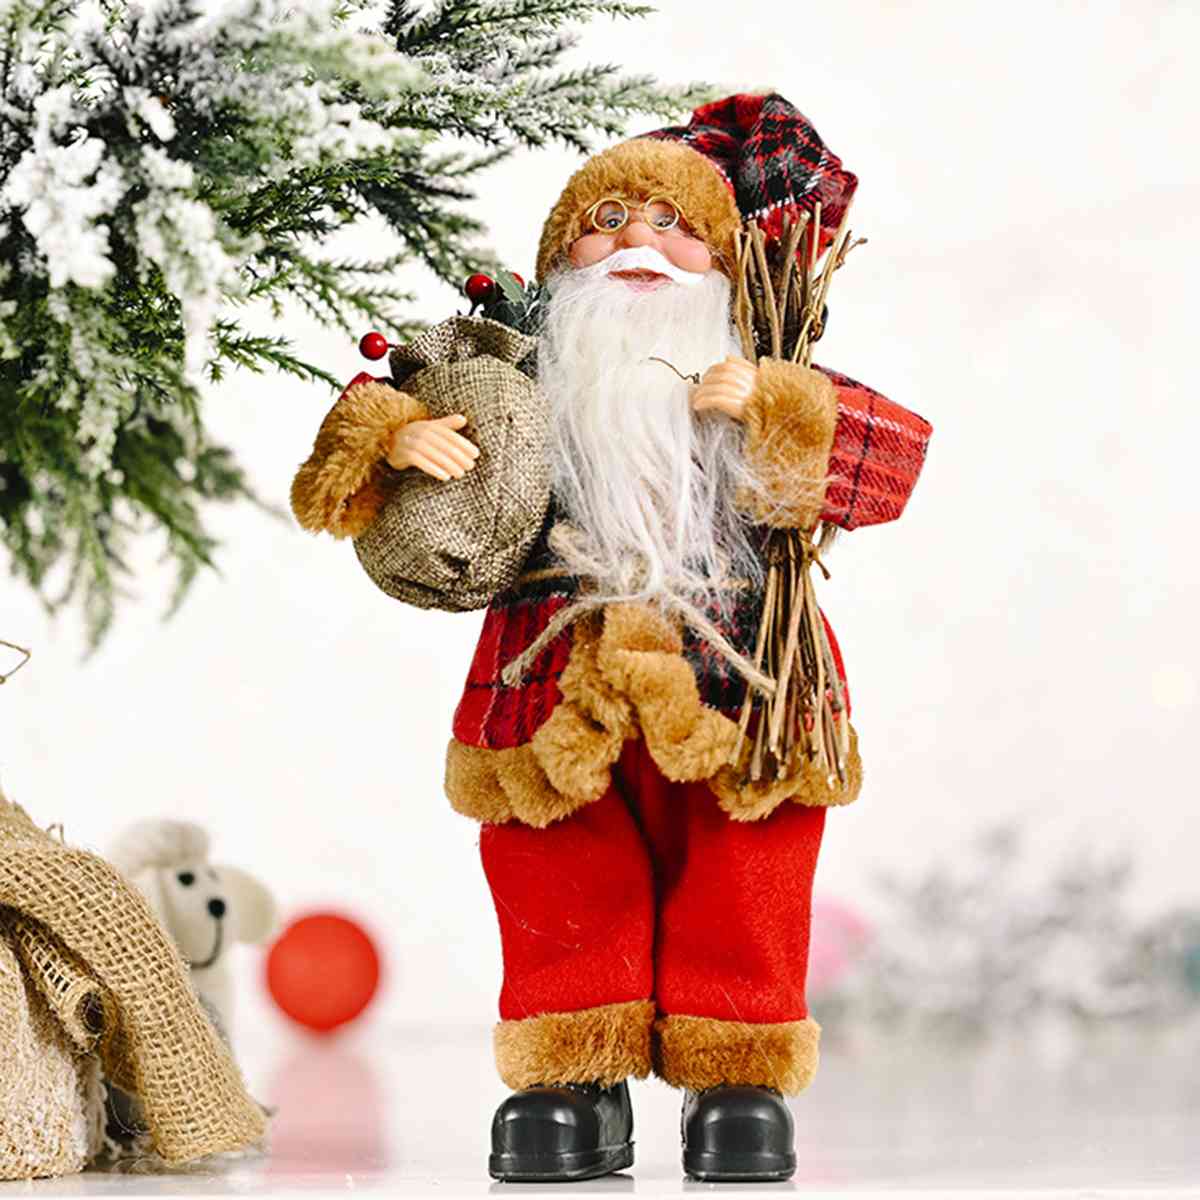 Santa Claus Decor Gnome 11.8" H x 7.9" W